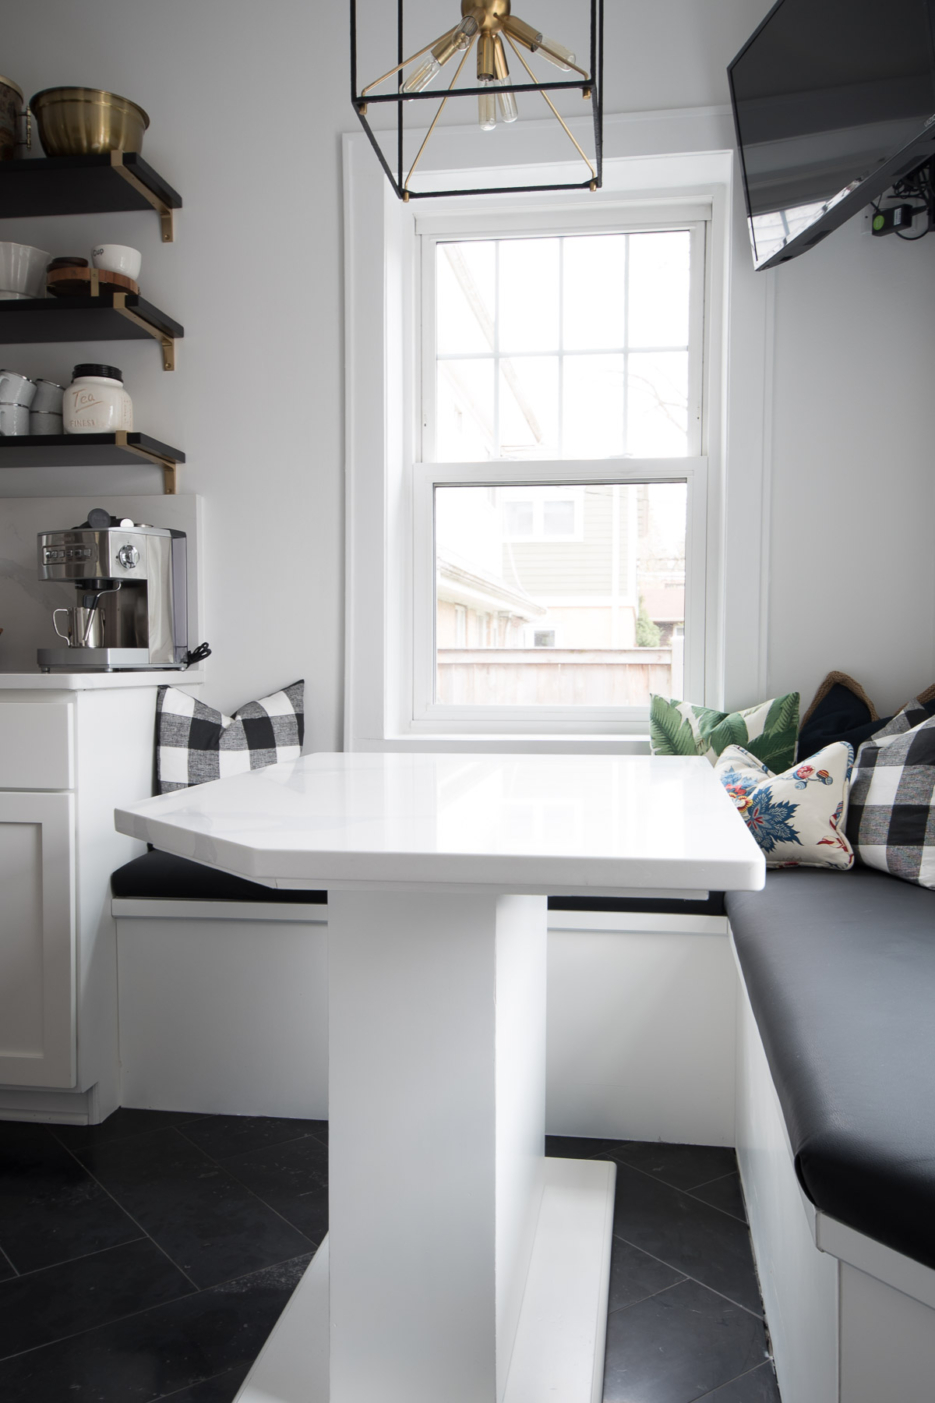 white quartz countertop and quartz backsplash slab #kitchendesign #quartzcountertops